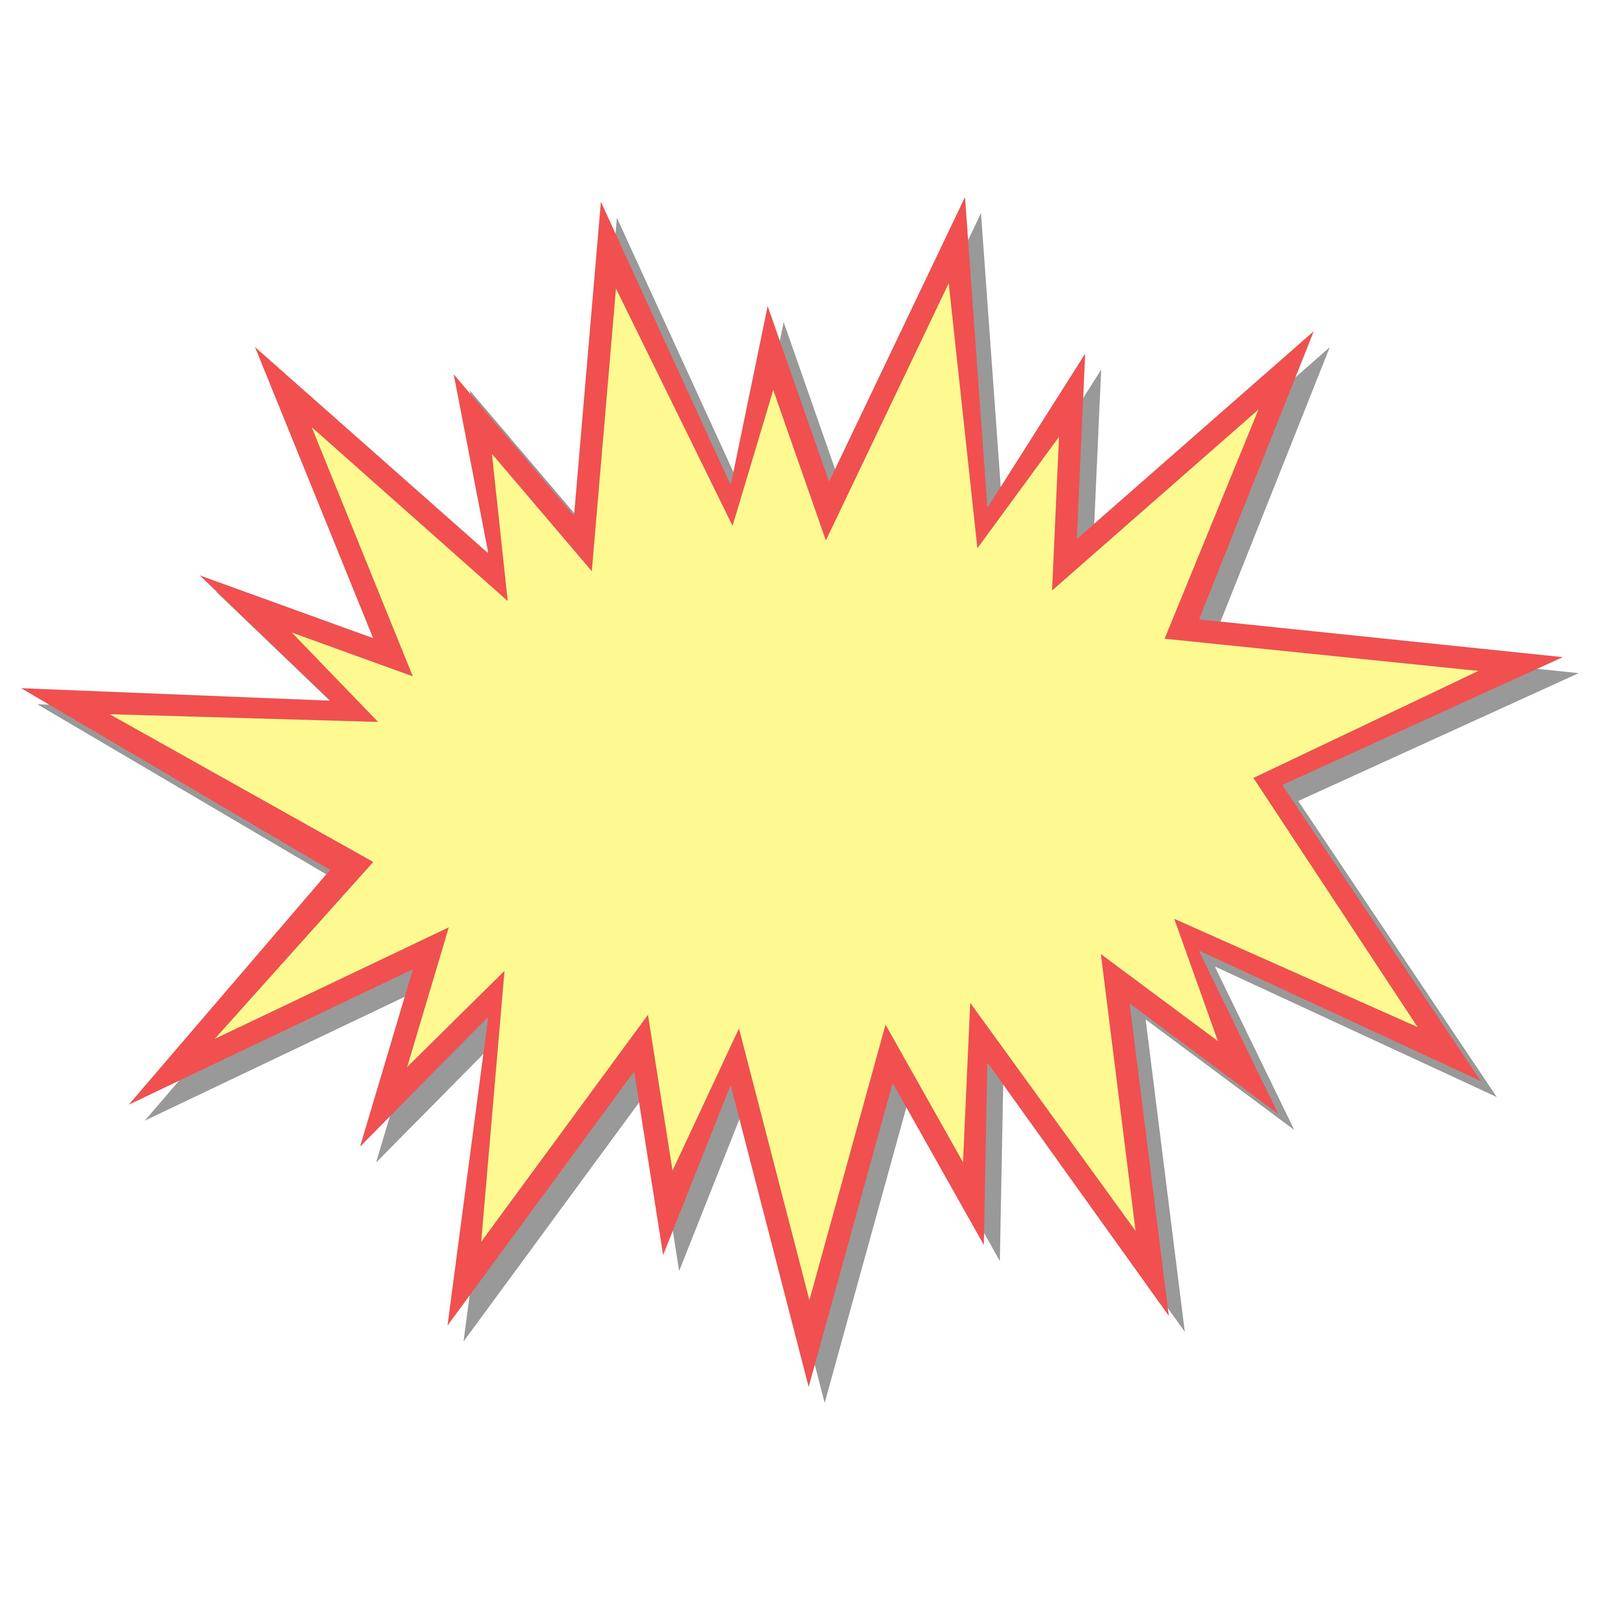 Flash starburst stars in cartoon style, speech bubble icon stock illustration by koksikoks